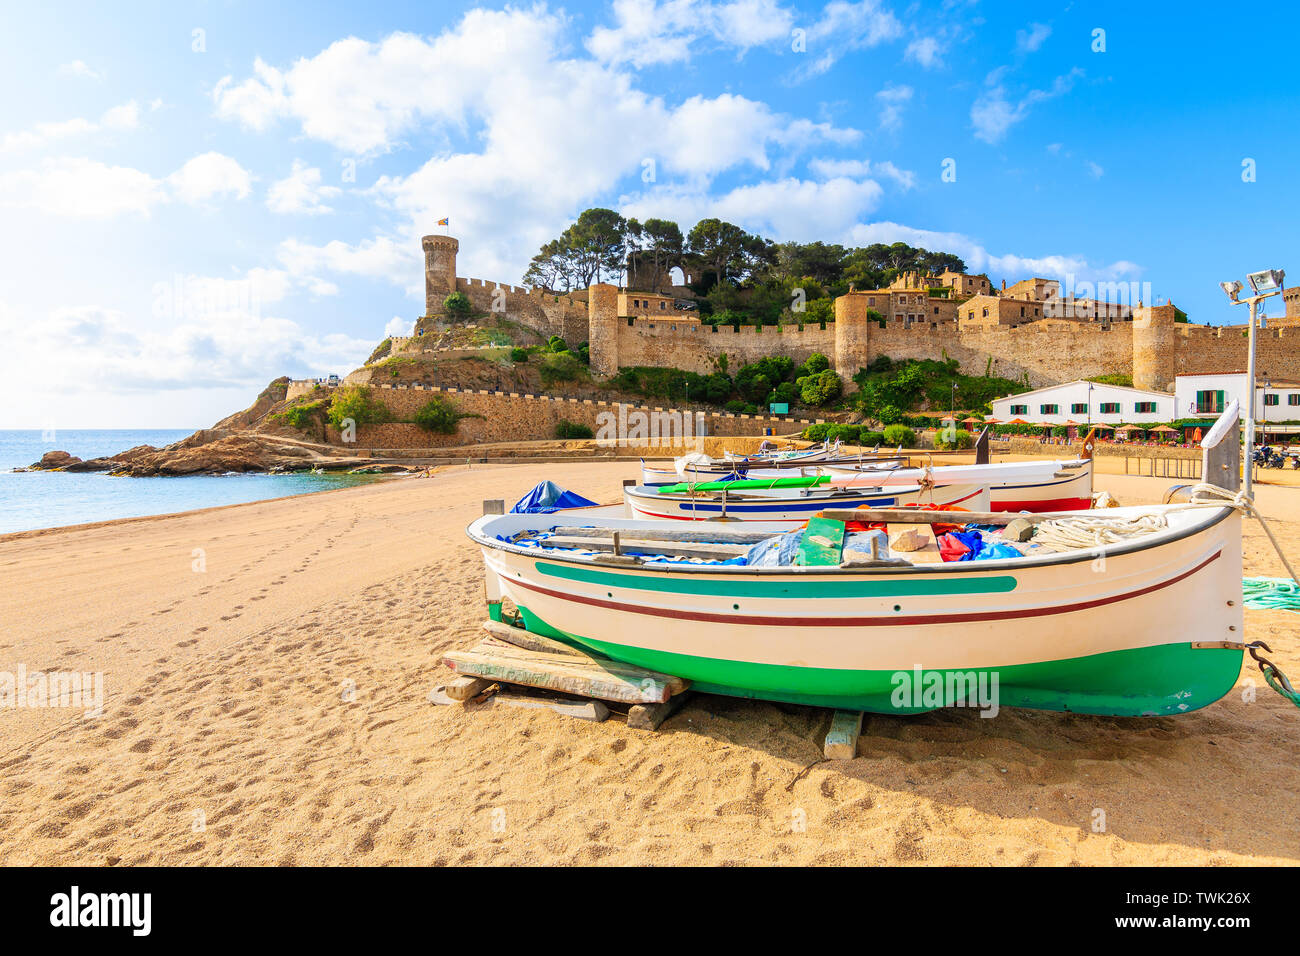 Barche di pescatori sulla spiaggia di sabbia dorata nella baia con castello in background, Tossa de Mar, Costa Brava, Spagna Foto Stock